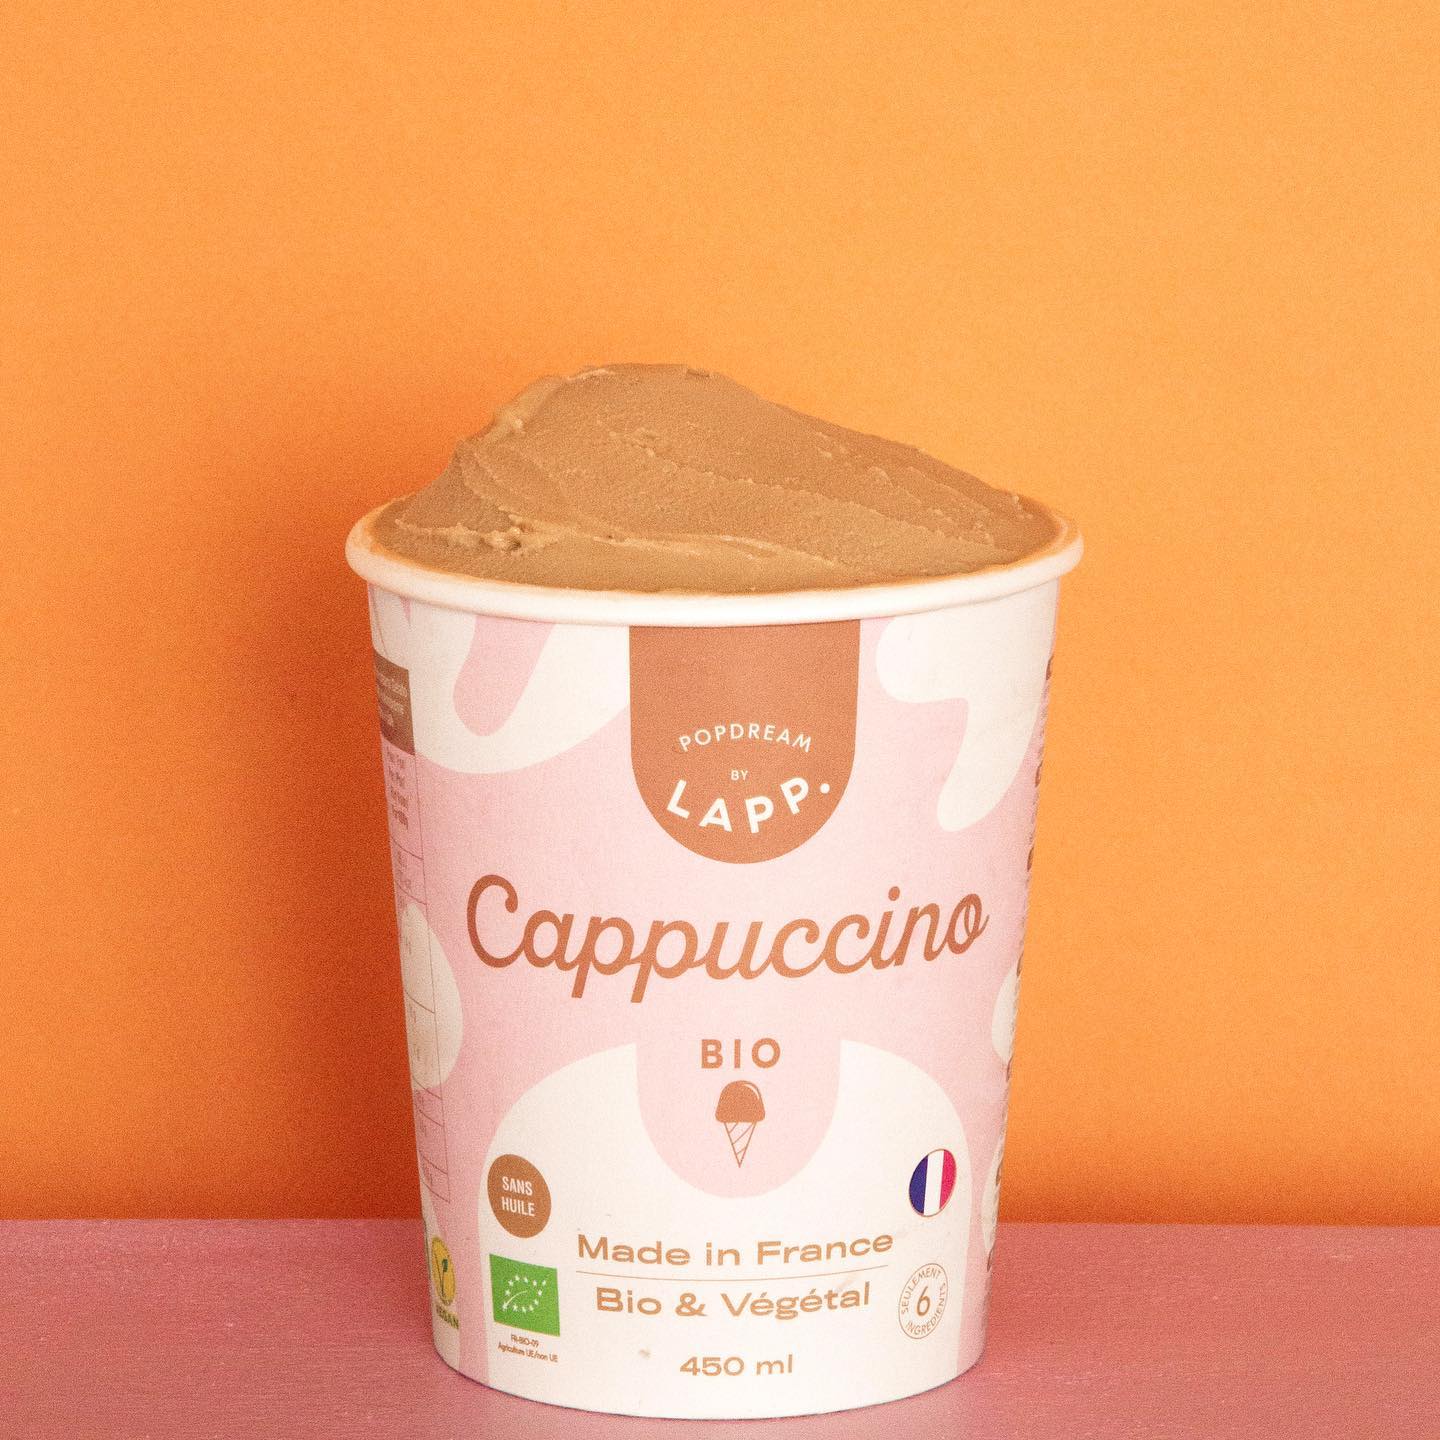 Avez-vous déjà goûté notre délicieuse glace Popdream saveur Cappuccino ? ?

Avis à tous les gourmands, cette petite douceur végétale et bio est disponible chez Monoprix en exclusivité jusqu’à Septembre ! N’attendez plus !